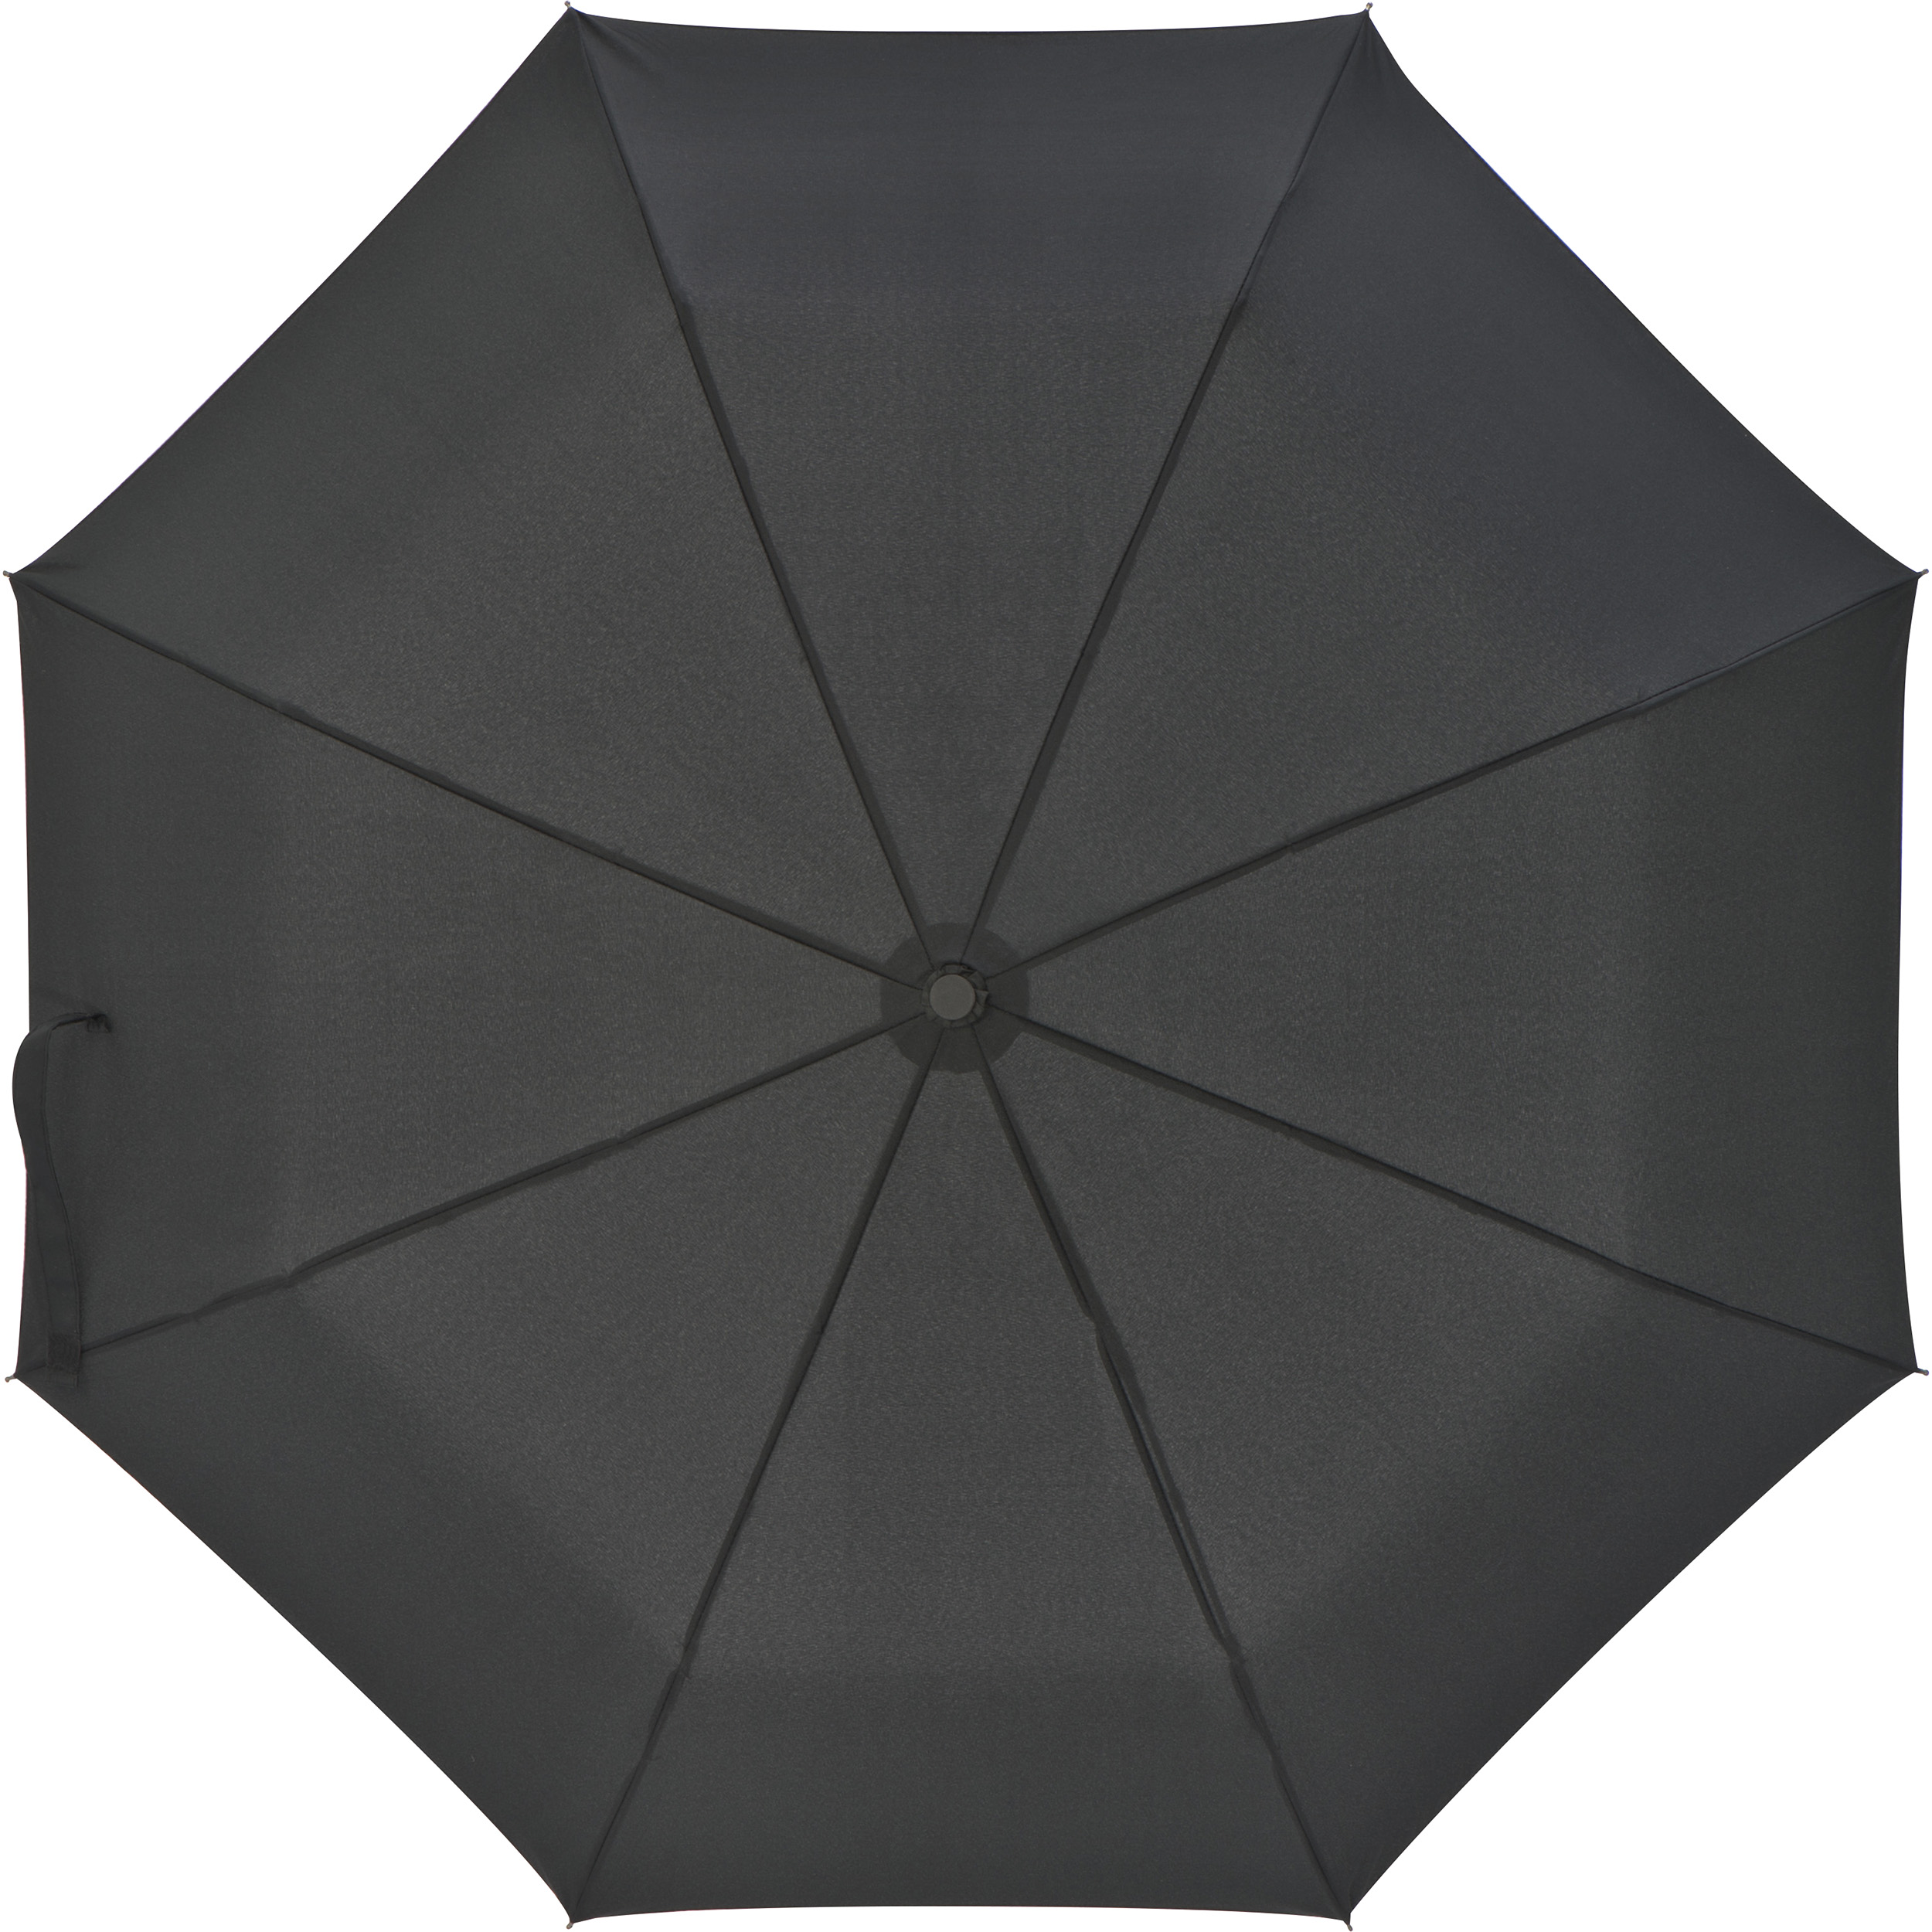 Ferraghini pocket umbrella